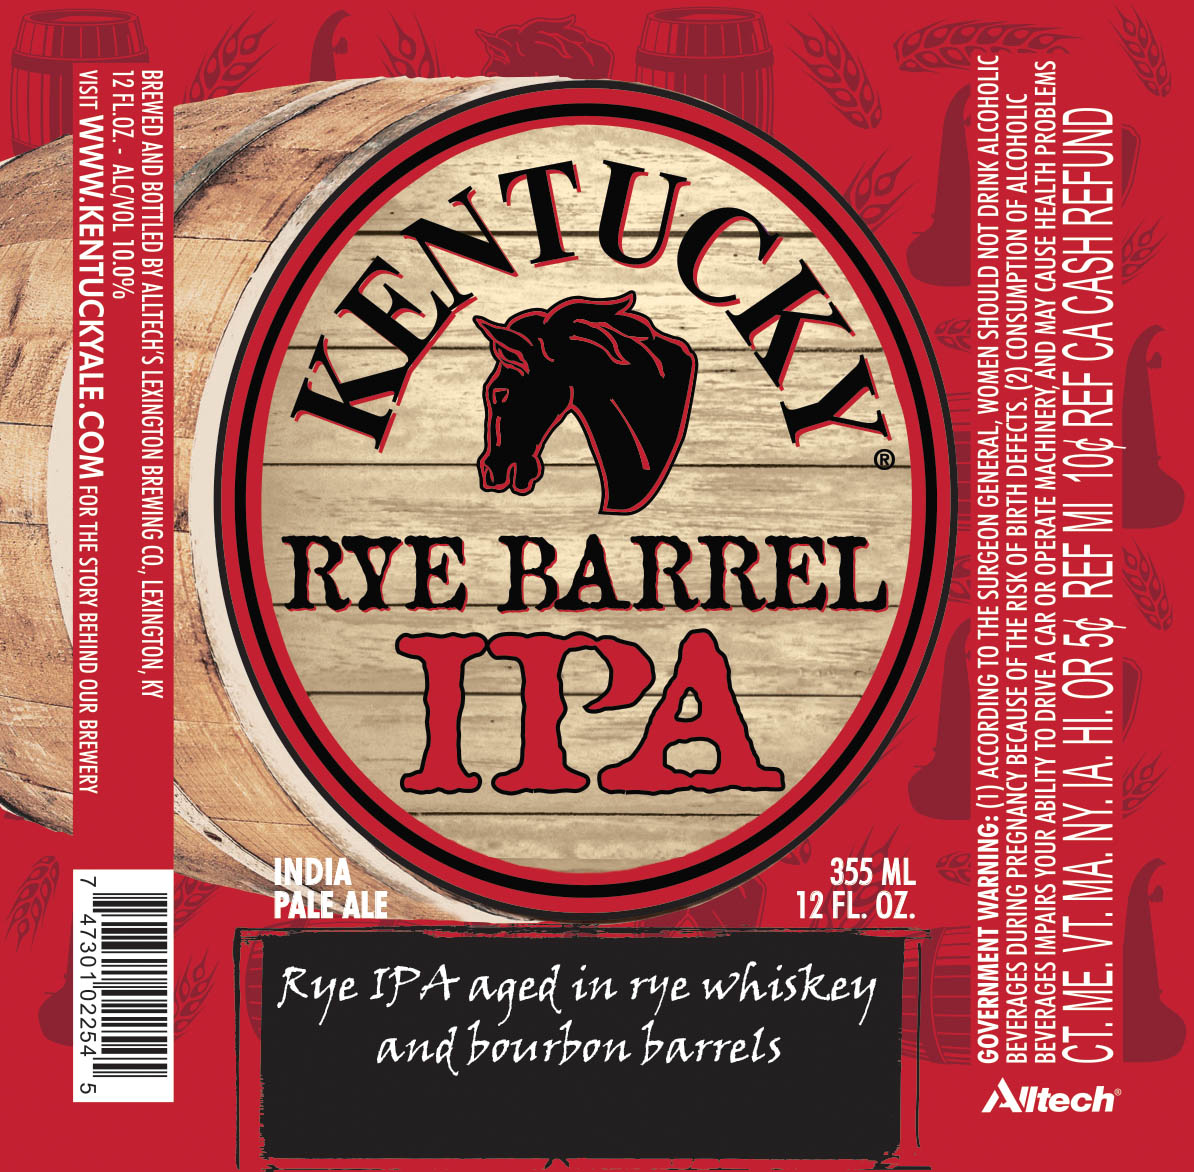 Kentucky Rye Barrel IPA